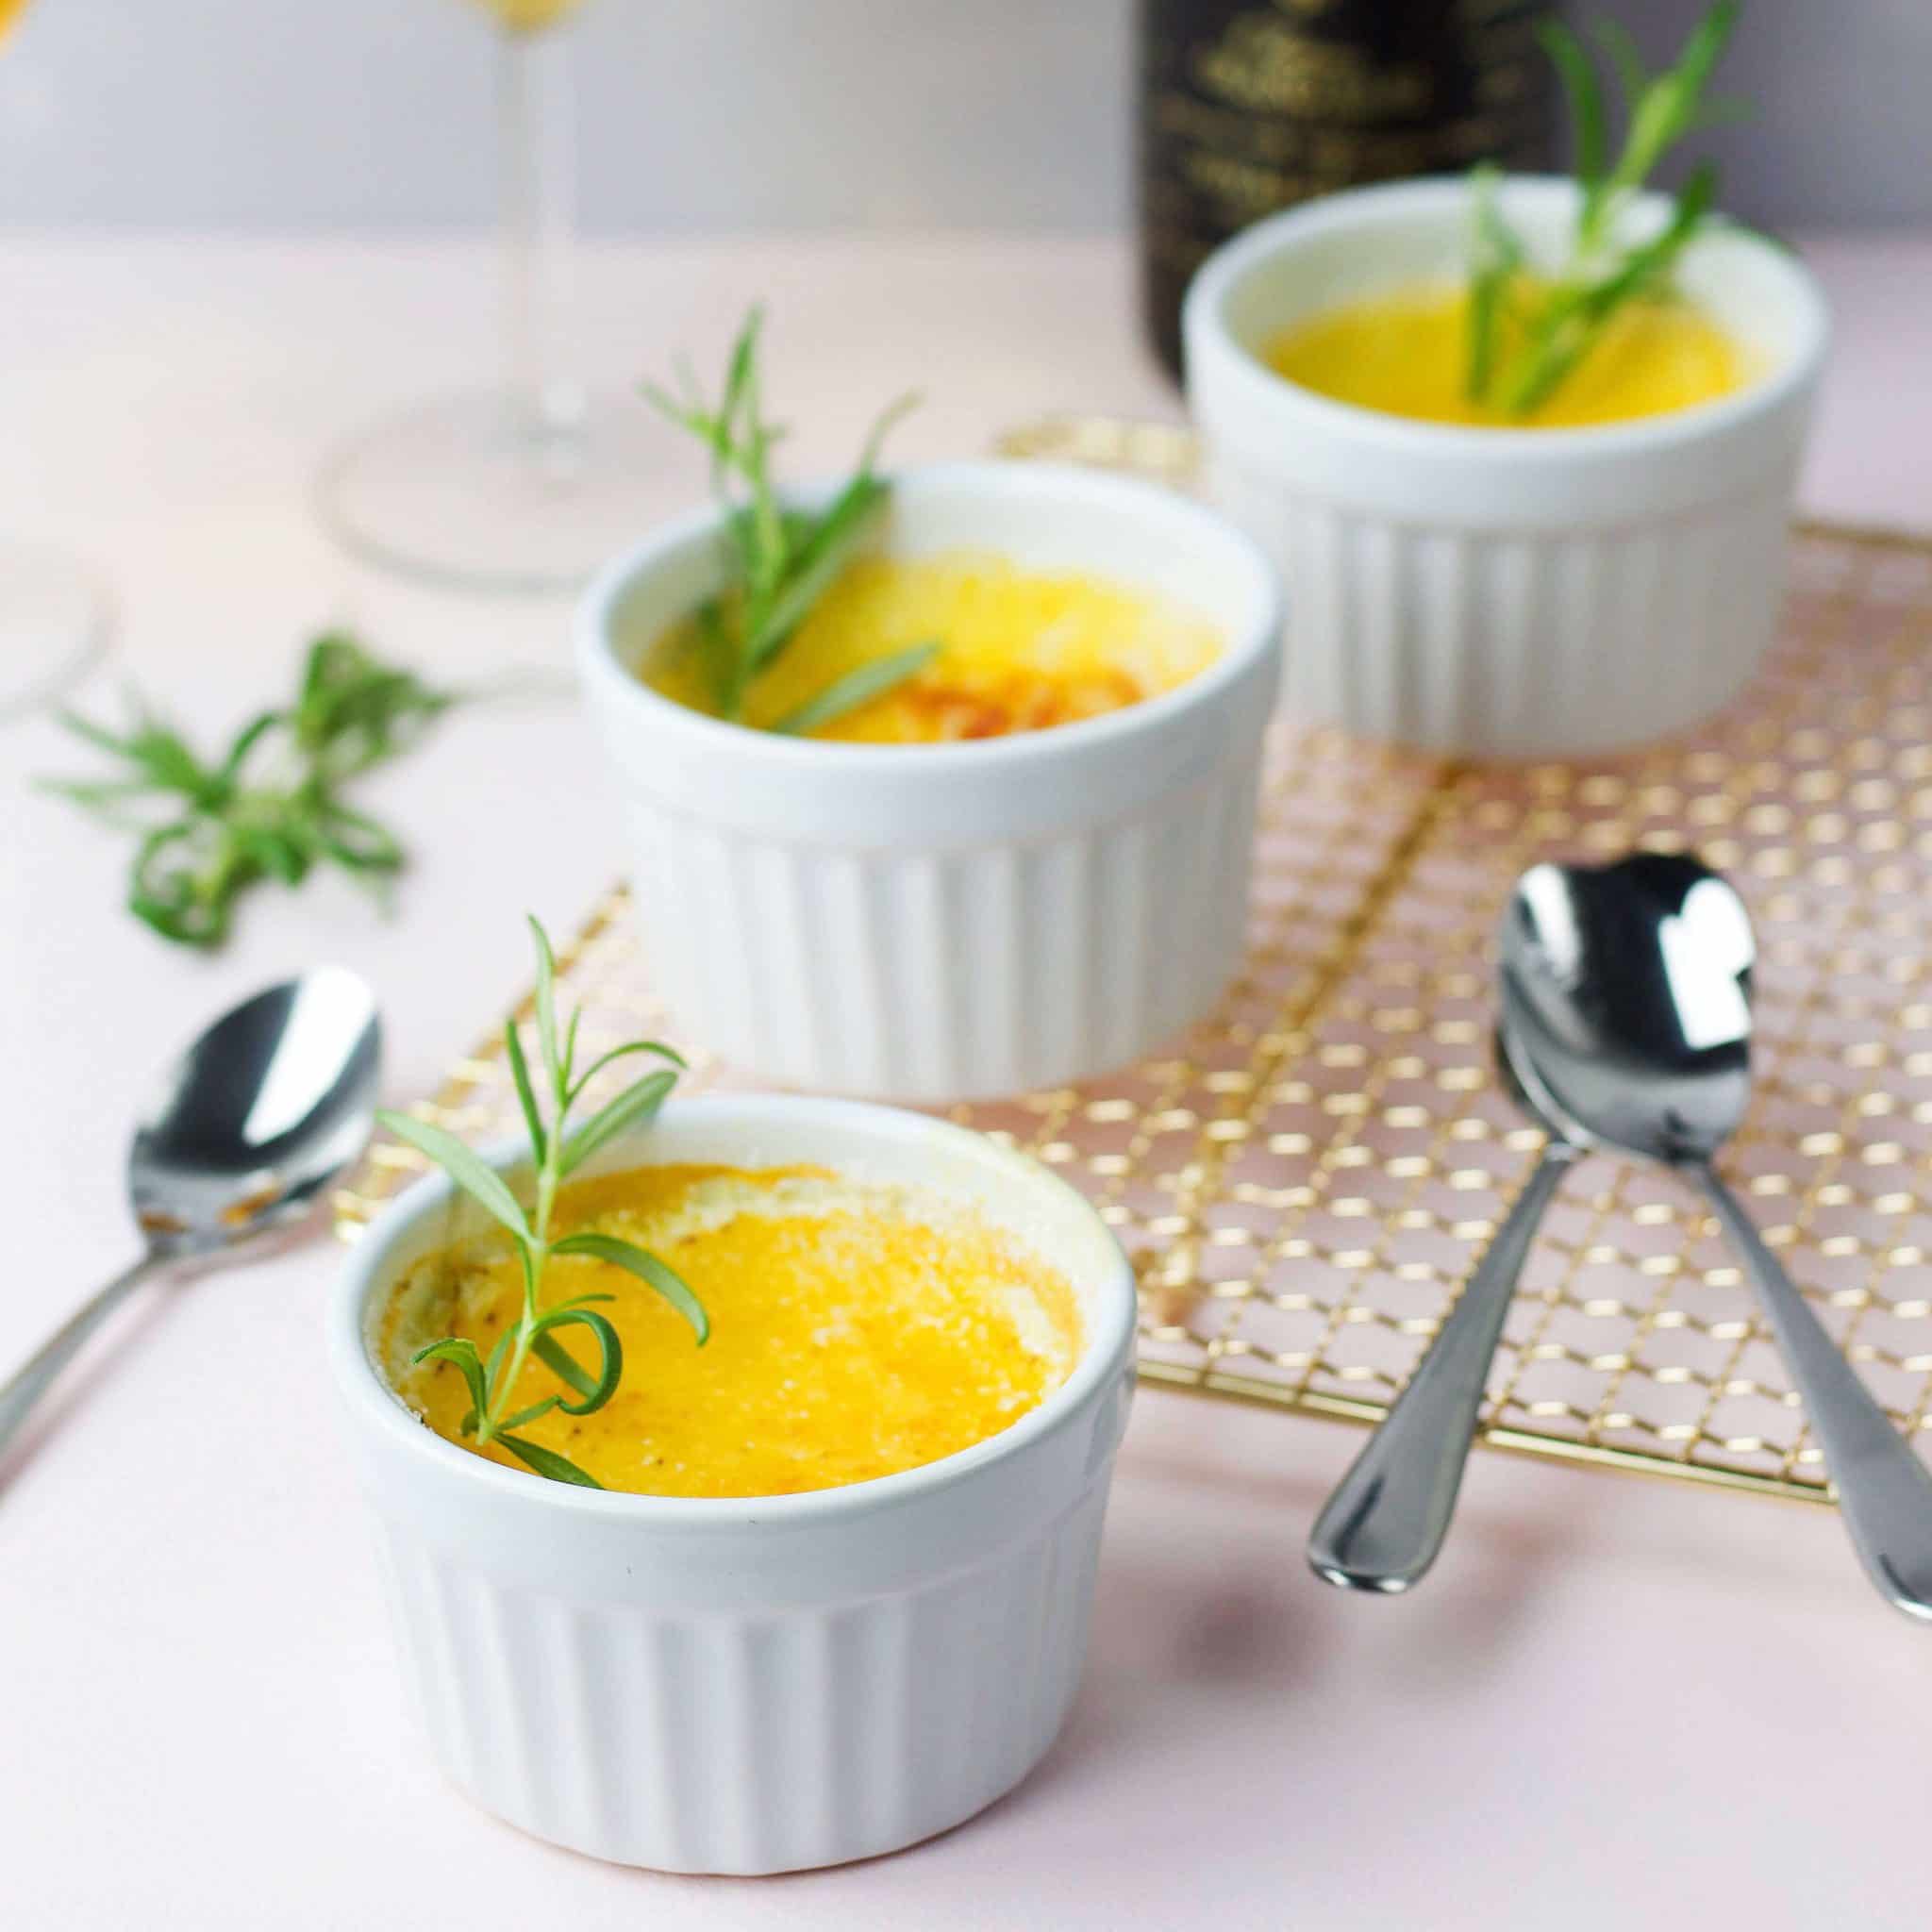 Rosemary crém brulée – recipe for famous dessert